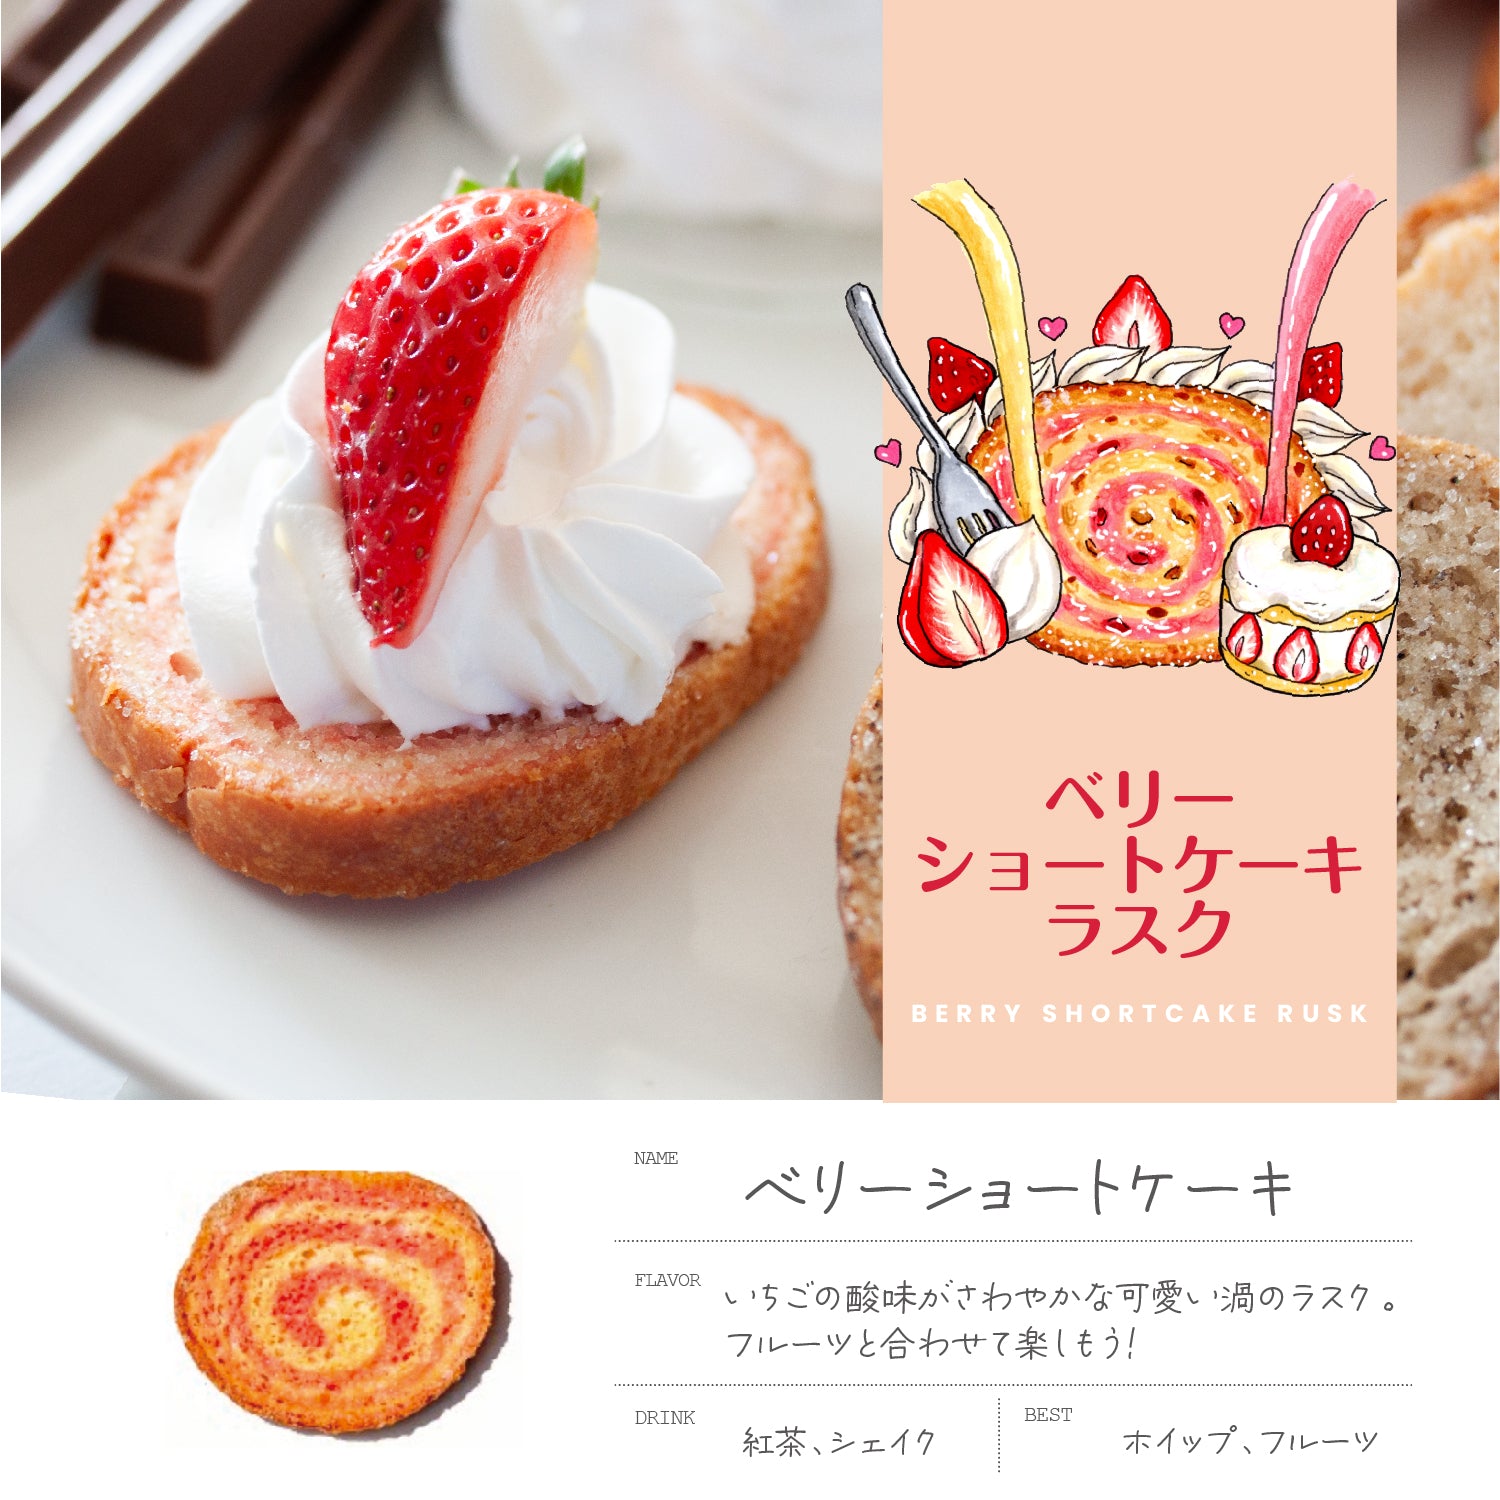 鎌倉山ラスクデコレーションアレンジレシピ「いちごとクリームで作るラスクケーキ」のご紹介♪